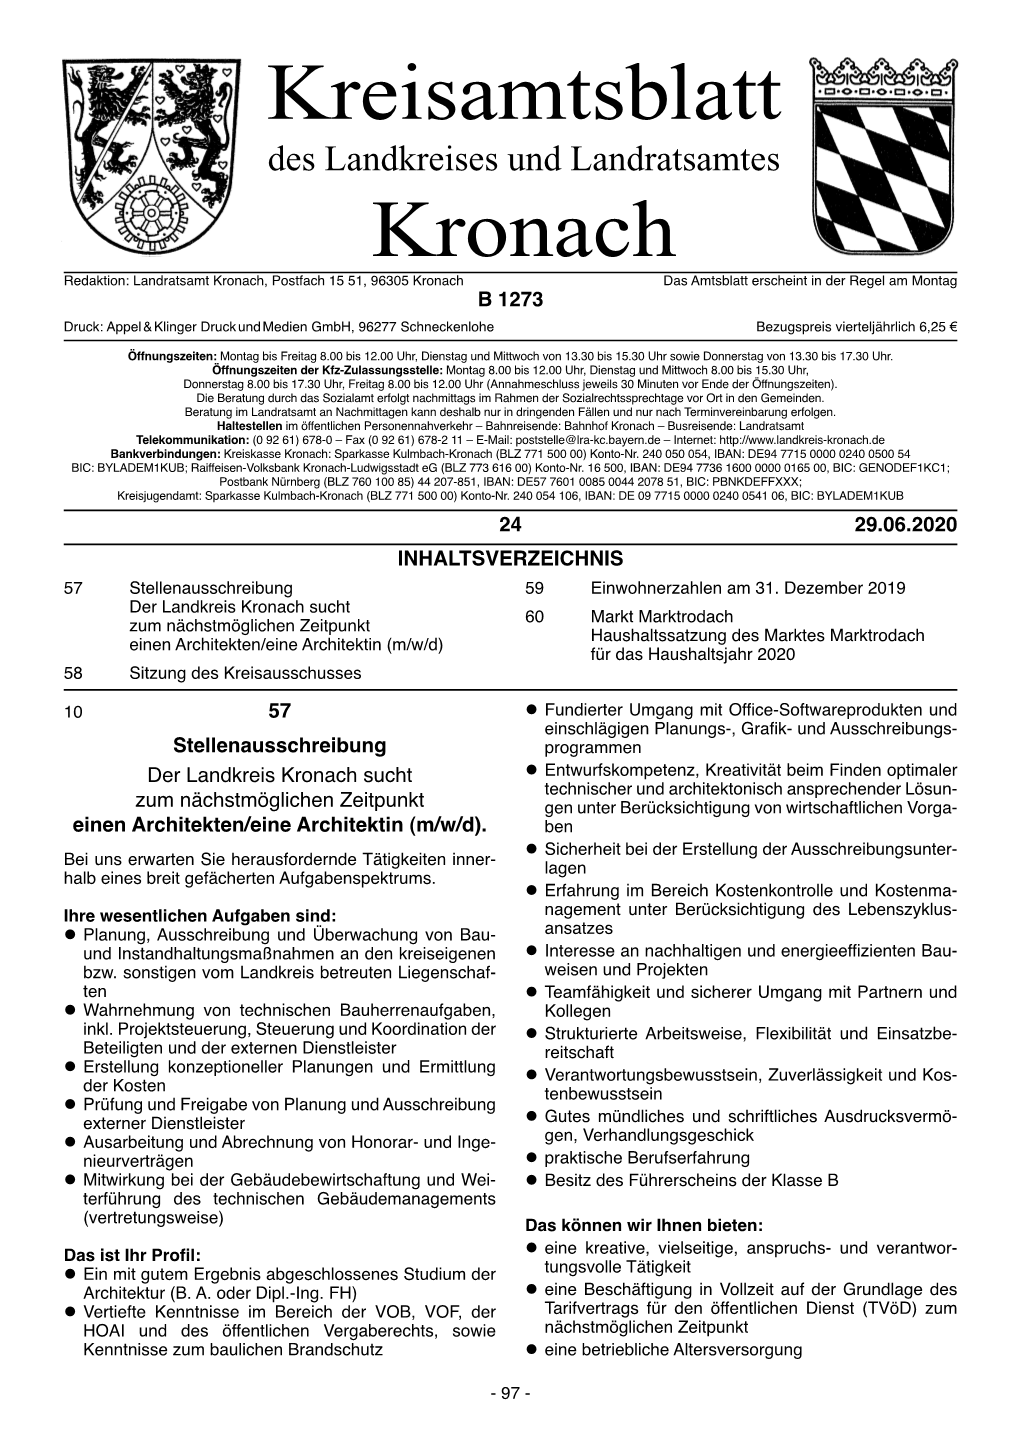 Kreisamtsblatt Kronach